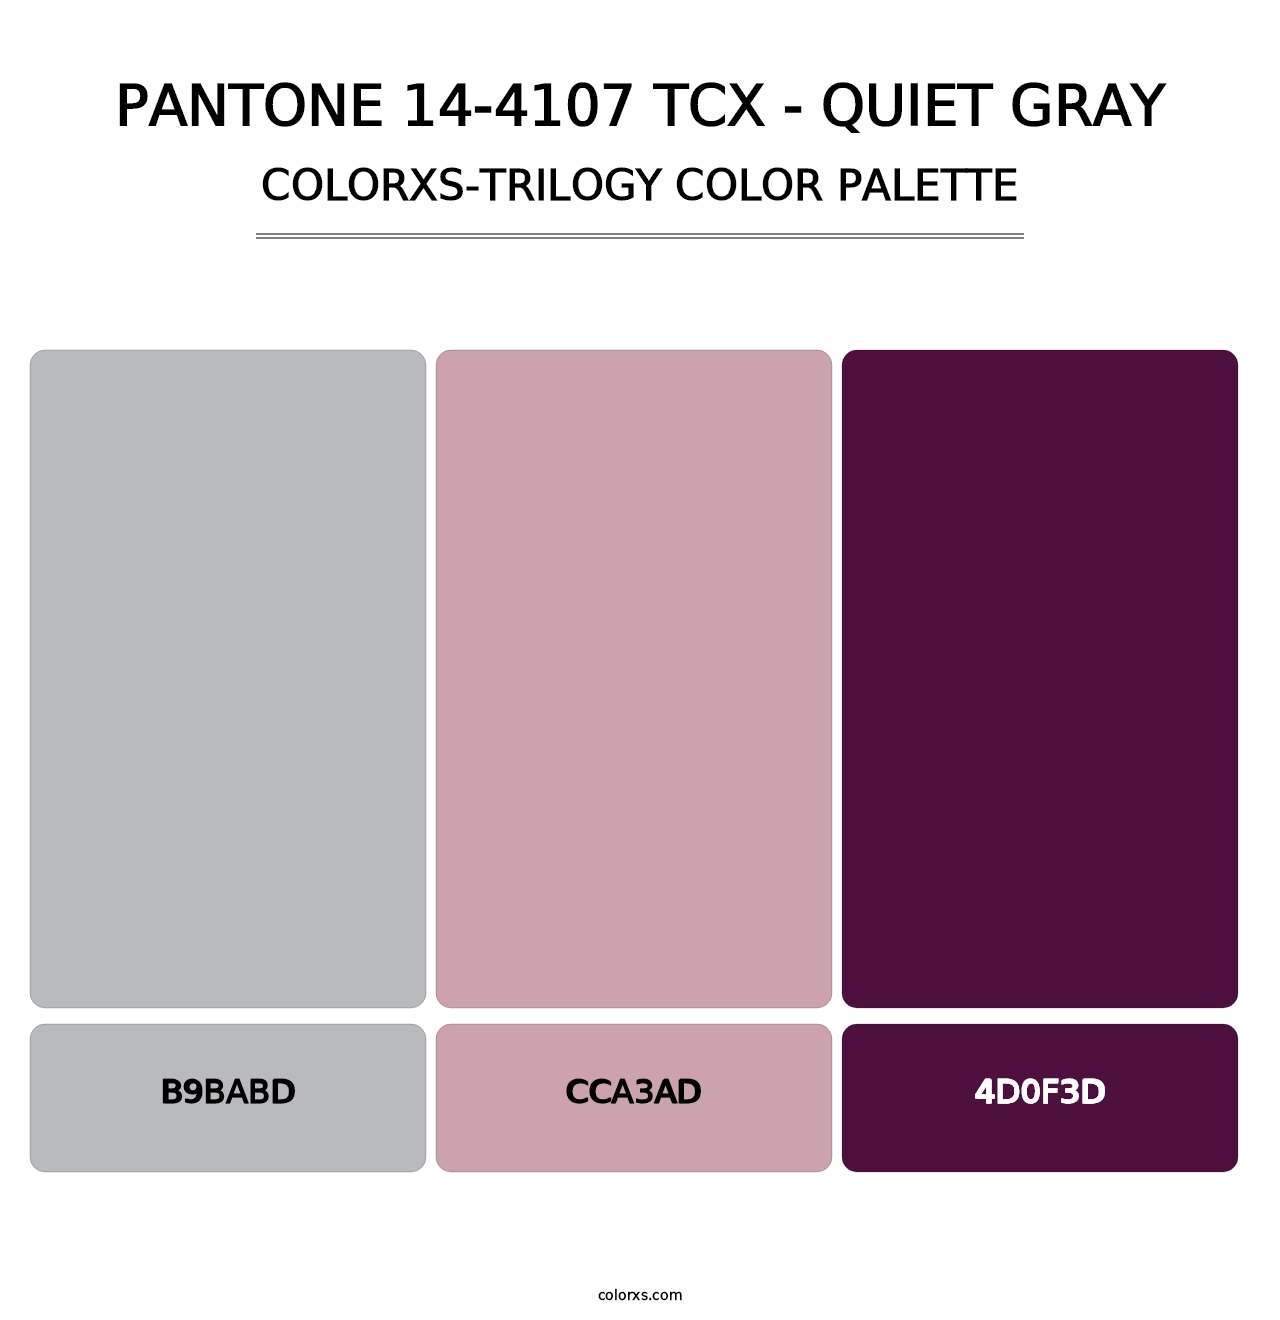 PANTONE 14-4107 TCX - Quiet Gray - Colorxs Trilogy Palette